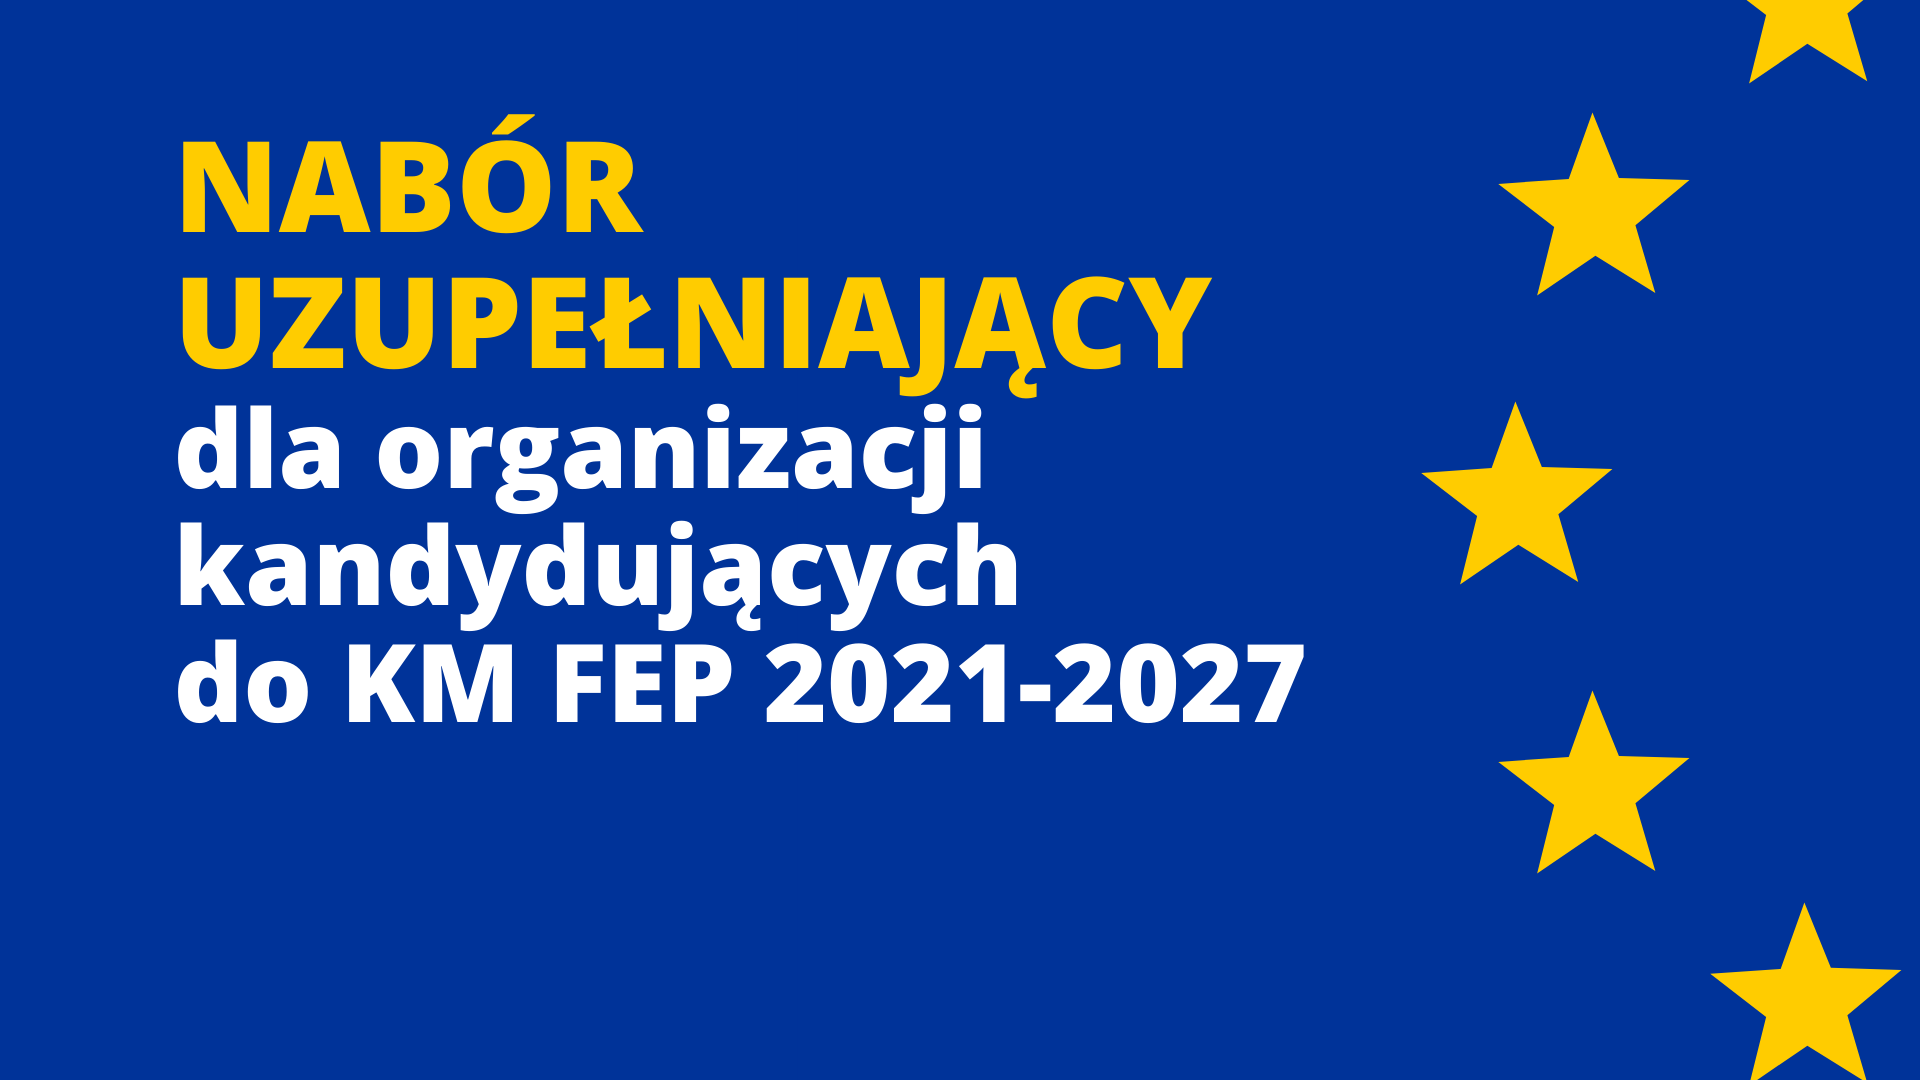 Nabór uzupełniający dla organizacji kandydujących do KM FEP 2021-2027